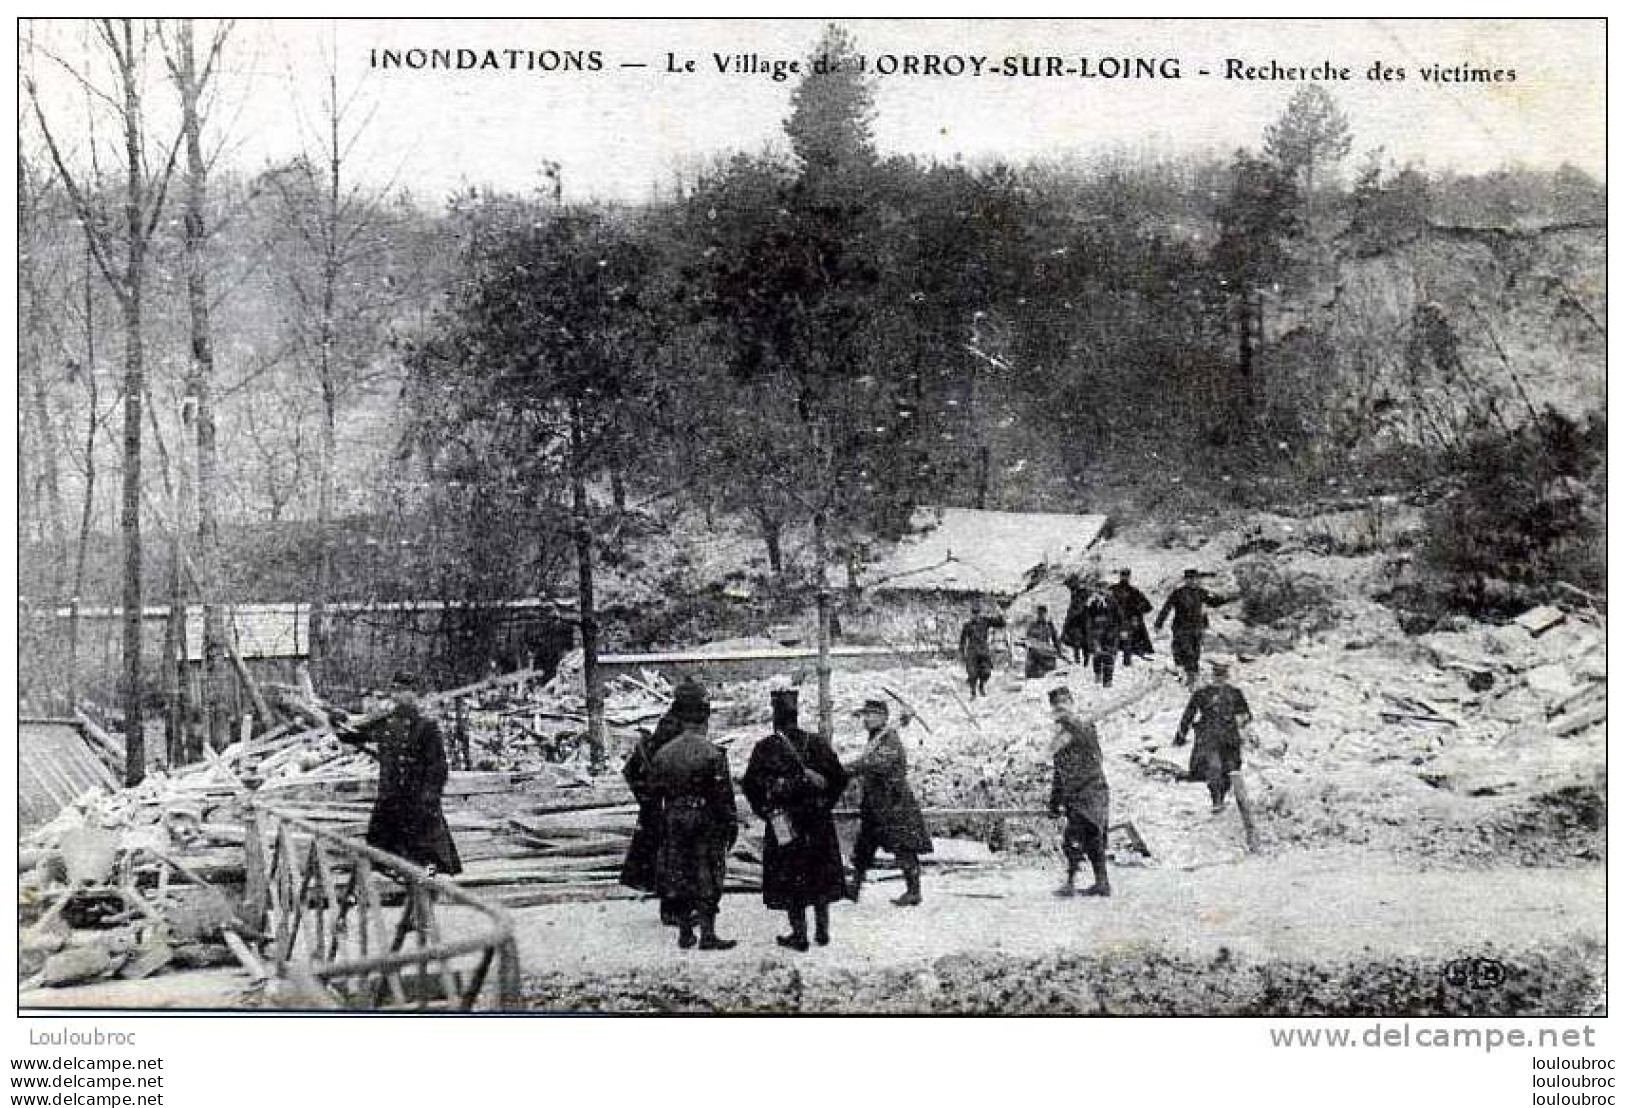 77 LORROY SUR LOING INONDATIONS 1910 RECHERCHE DES VICTIMES EDIT ELD - Disasters